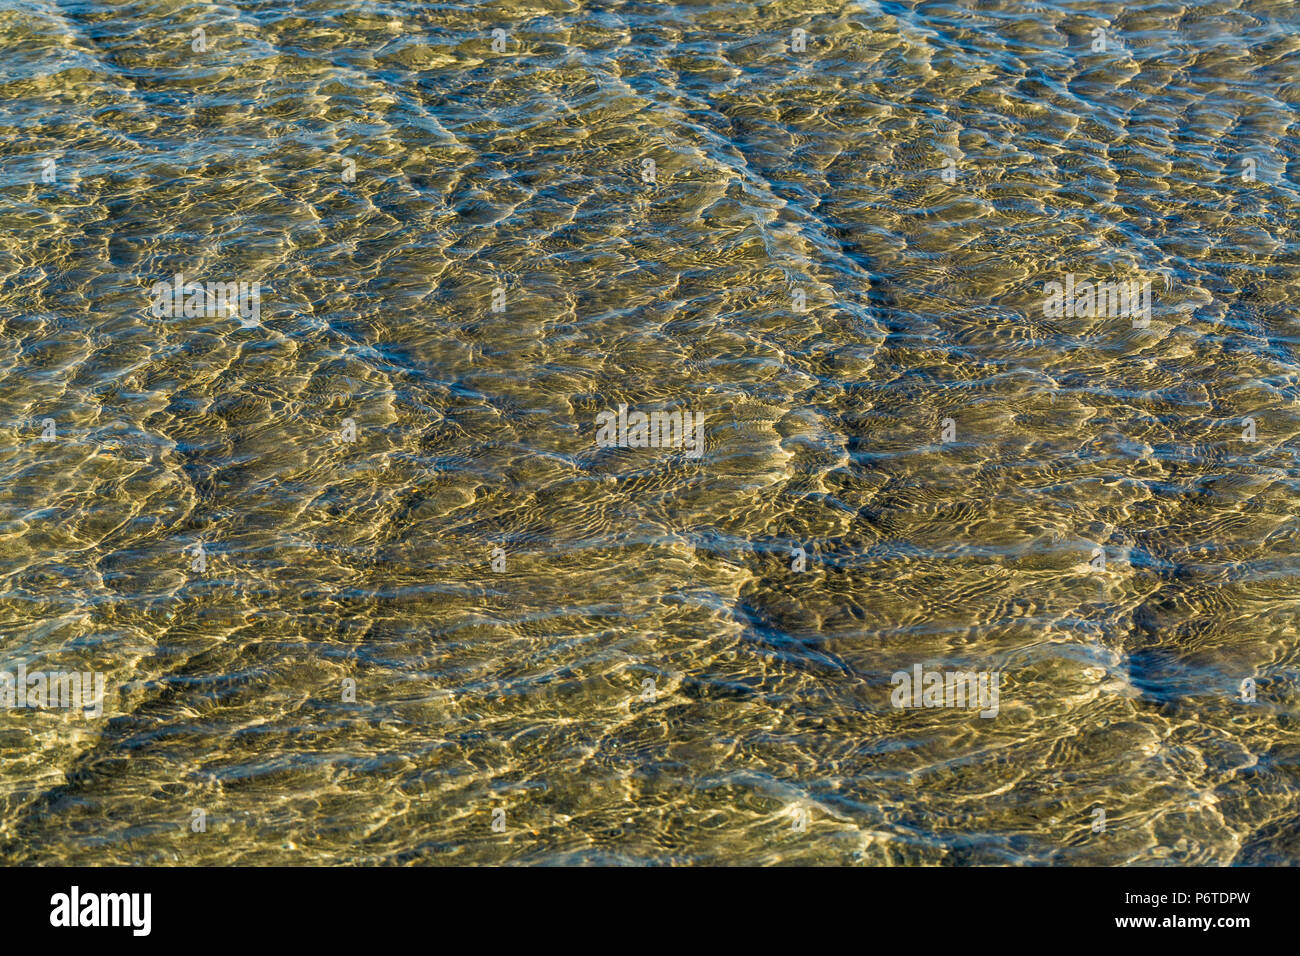 Motif formé par eau retour à l'océan comme une vague recule, sur Shi Shi Beach le long de l'océan Pacifique à l'Olympic National Park, Washington Sta Banque D'Images